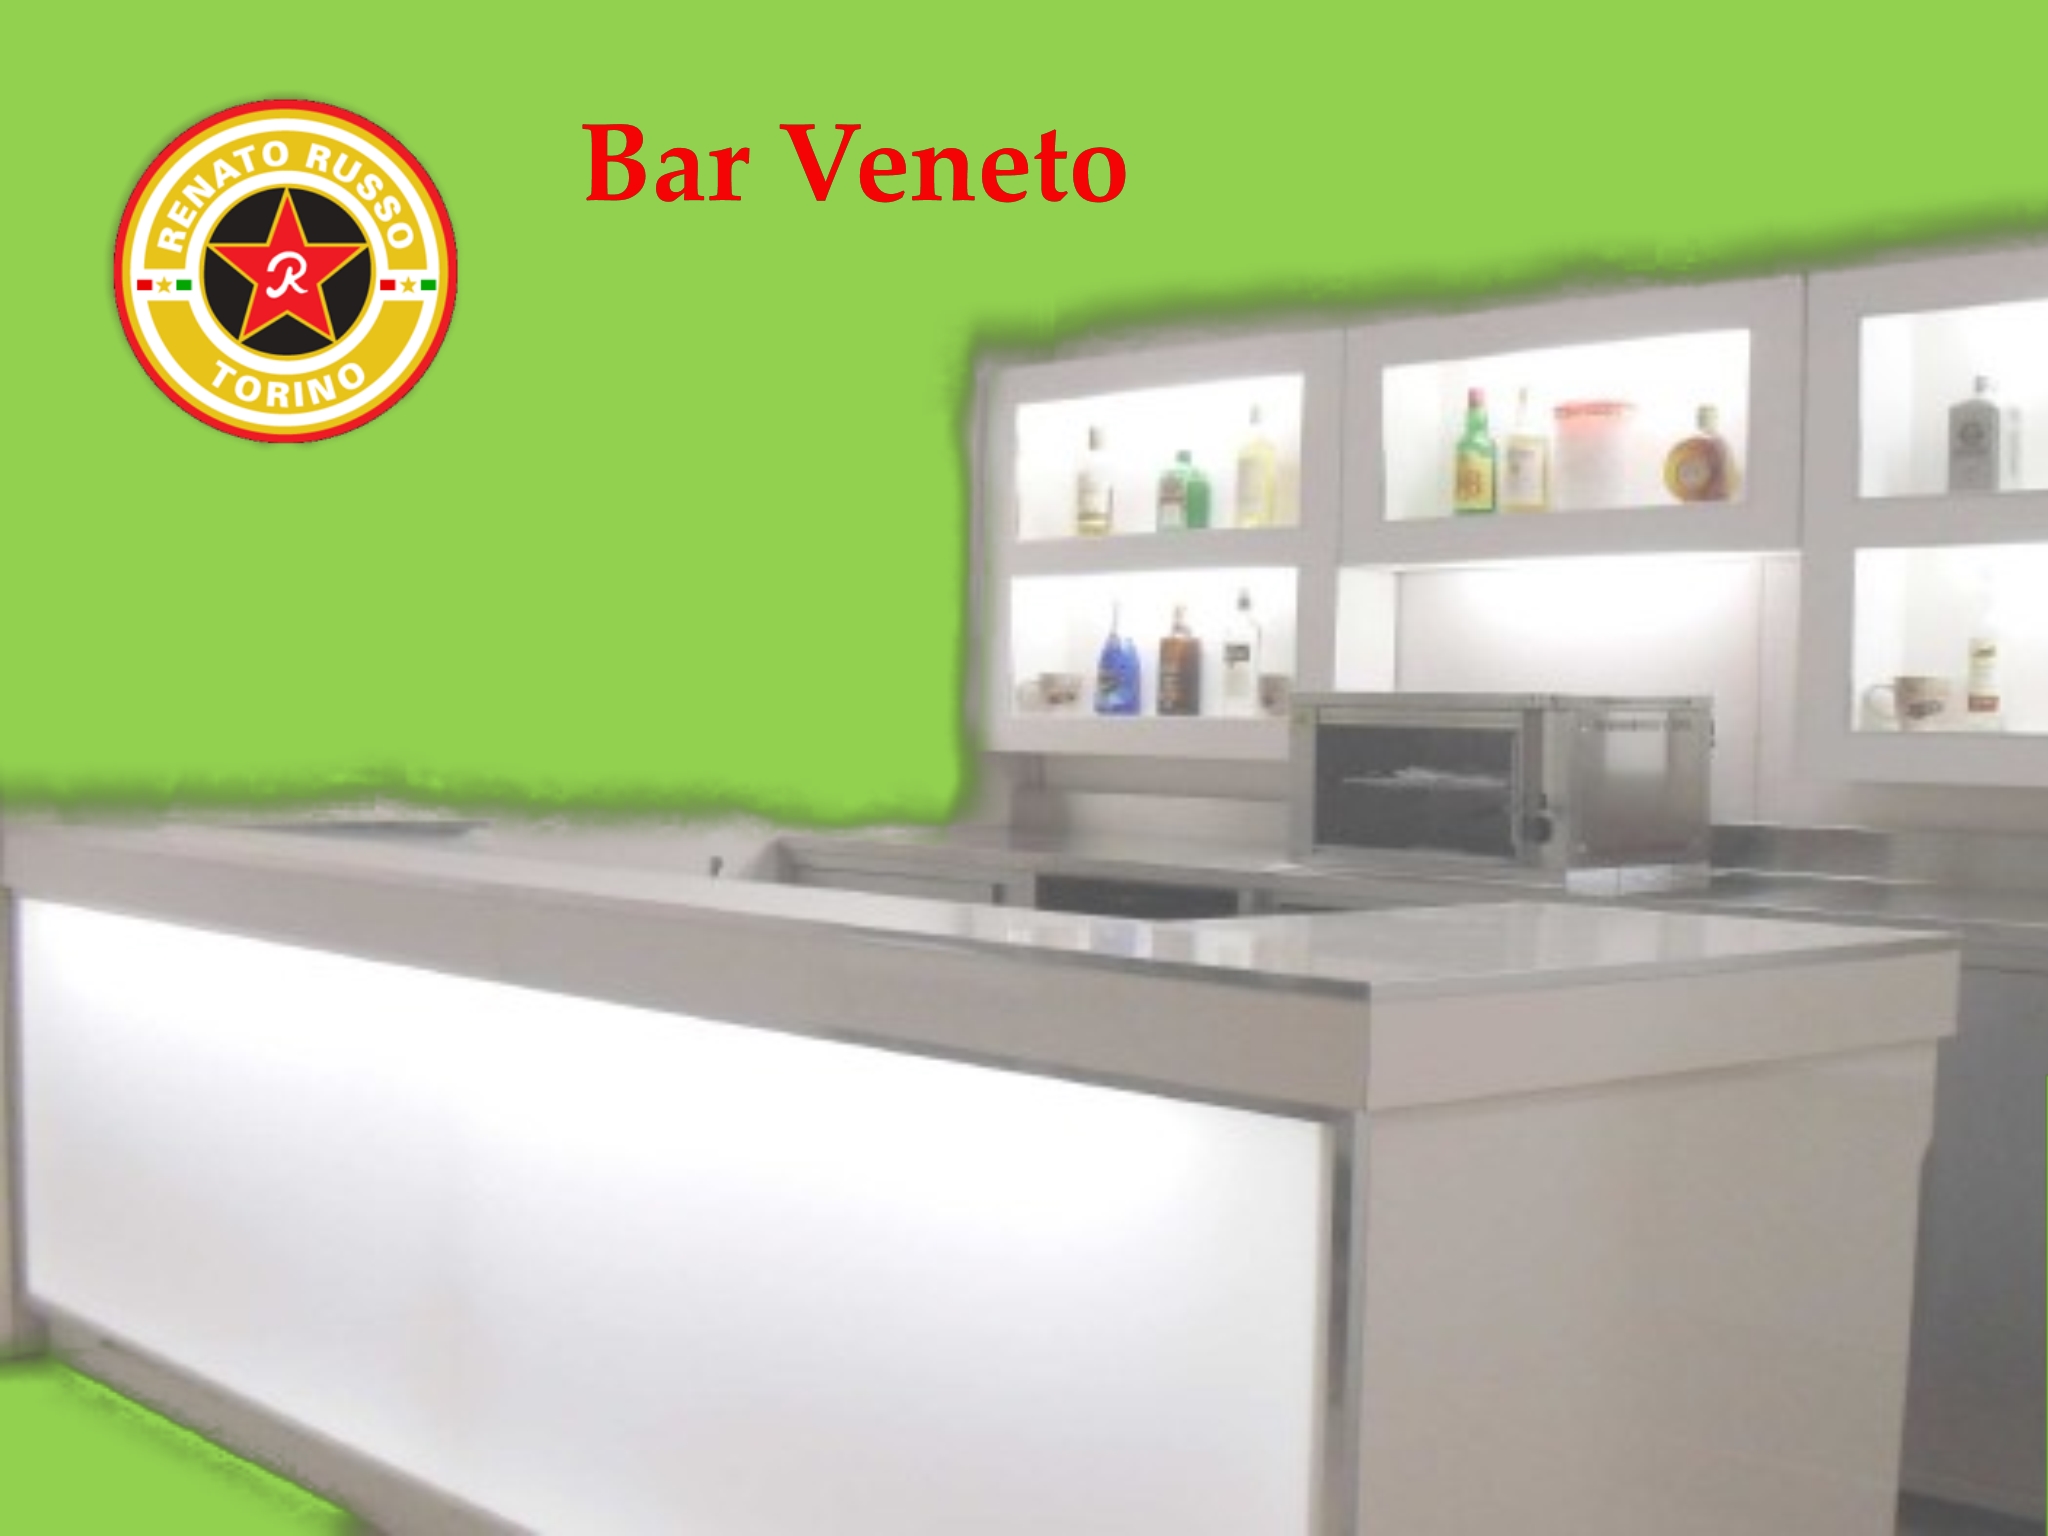 Arredamenti Per Bar Vedi I Prezzi Banchi Frigo Compra In Fabbrica Arredi Per Bar Torino Produttori Di Banchi Frigo Banconi Bar